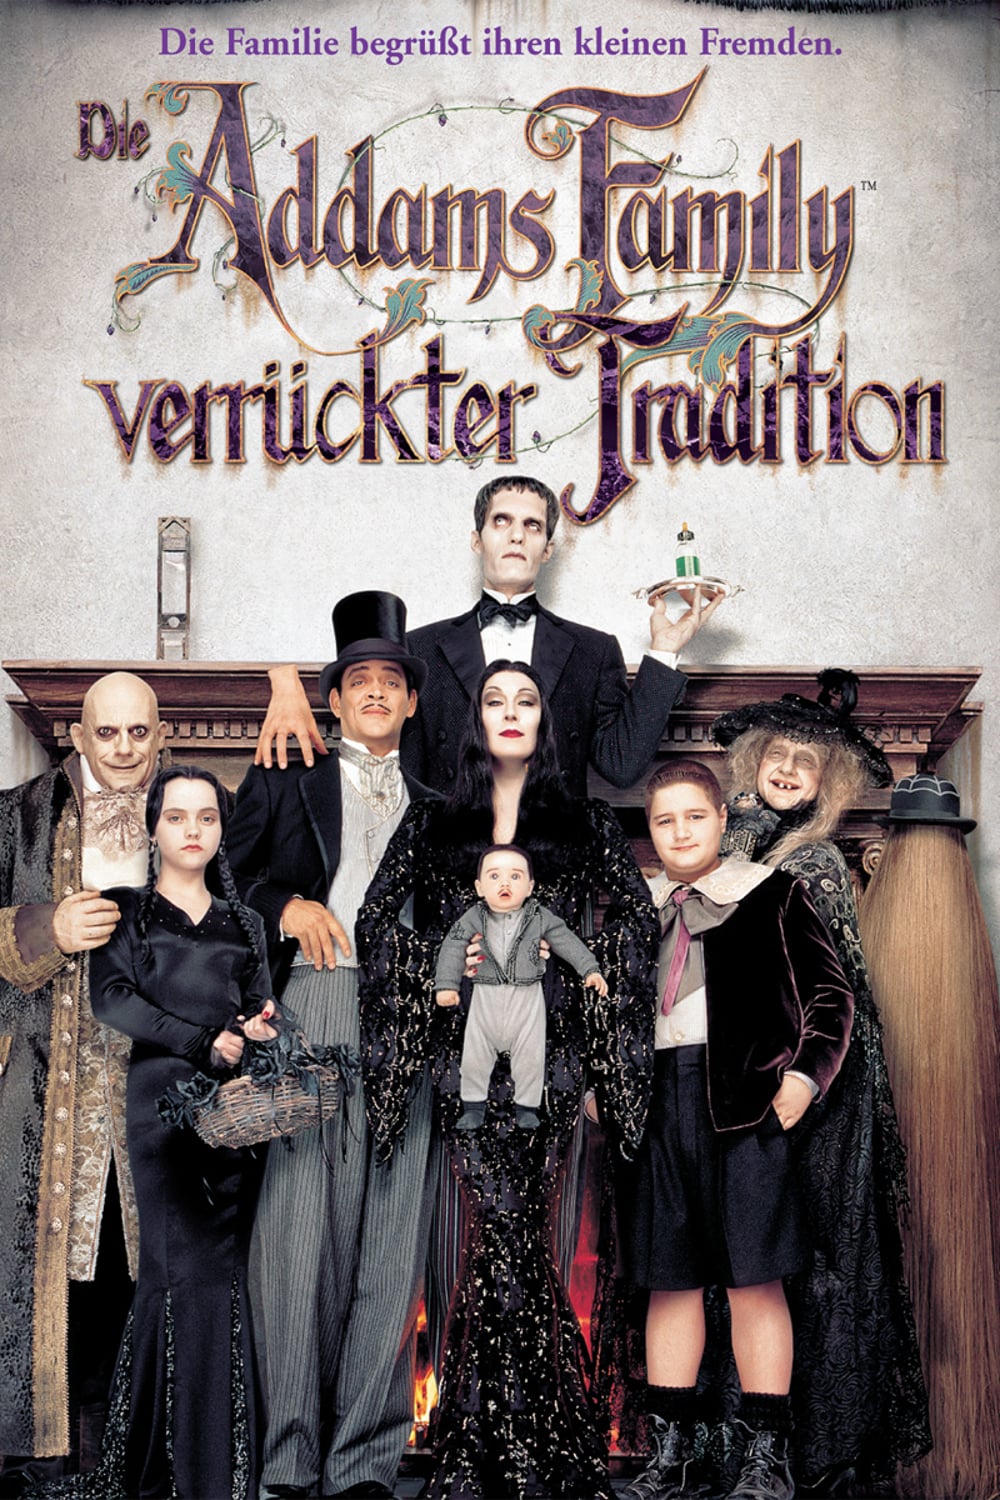 Plakat von "Die Addams Family in verrückter Tradition"